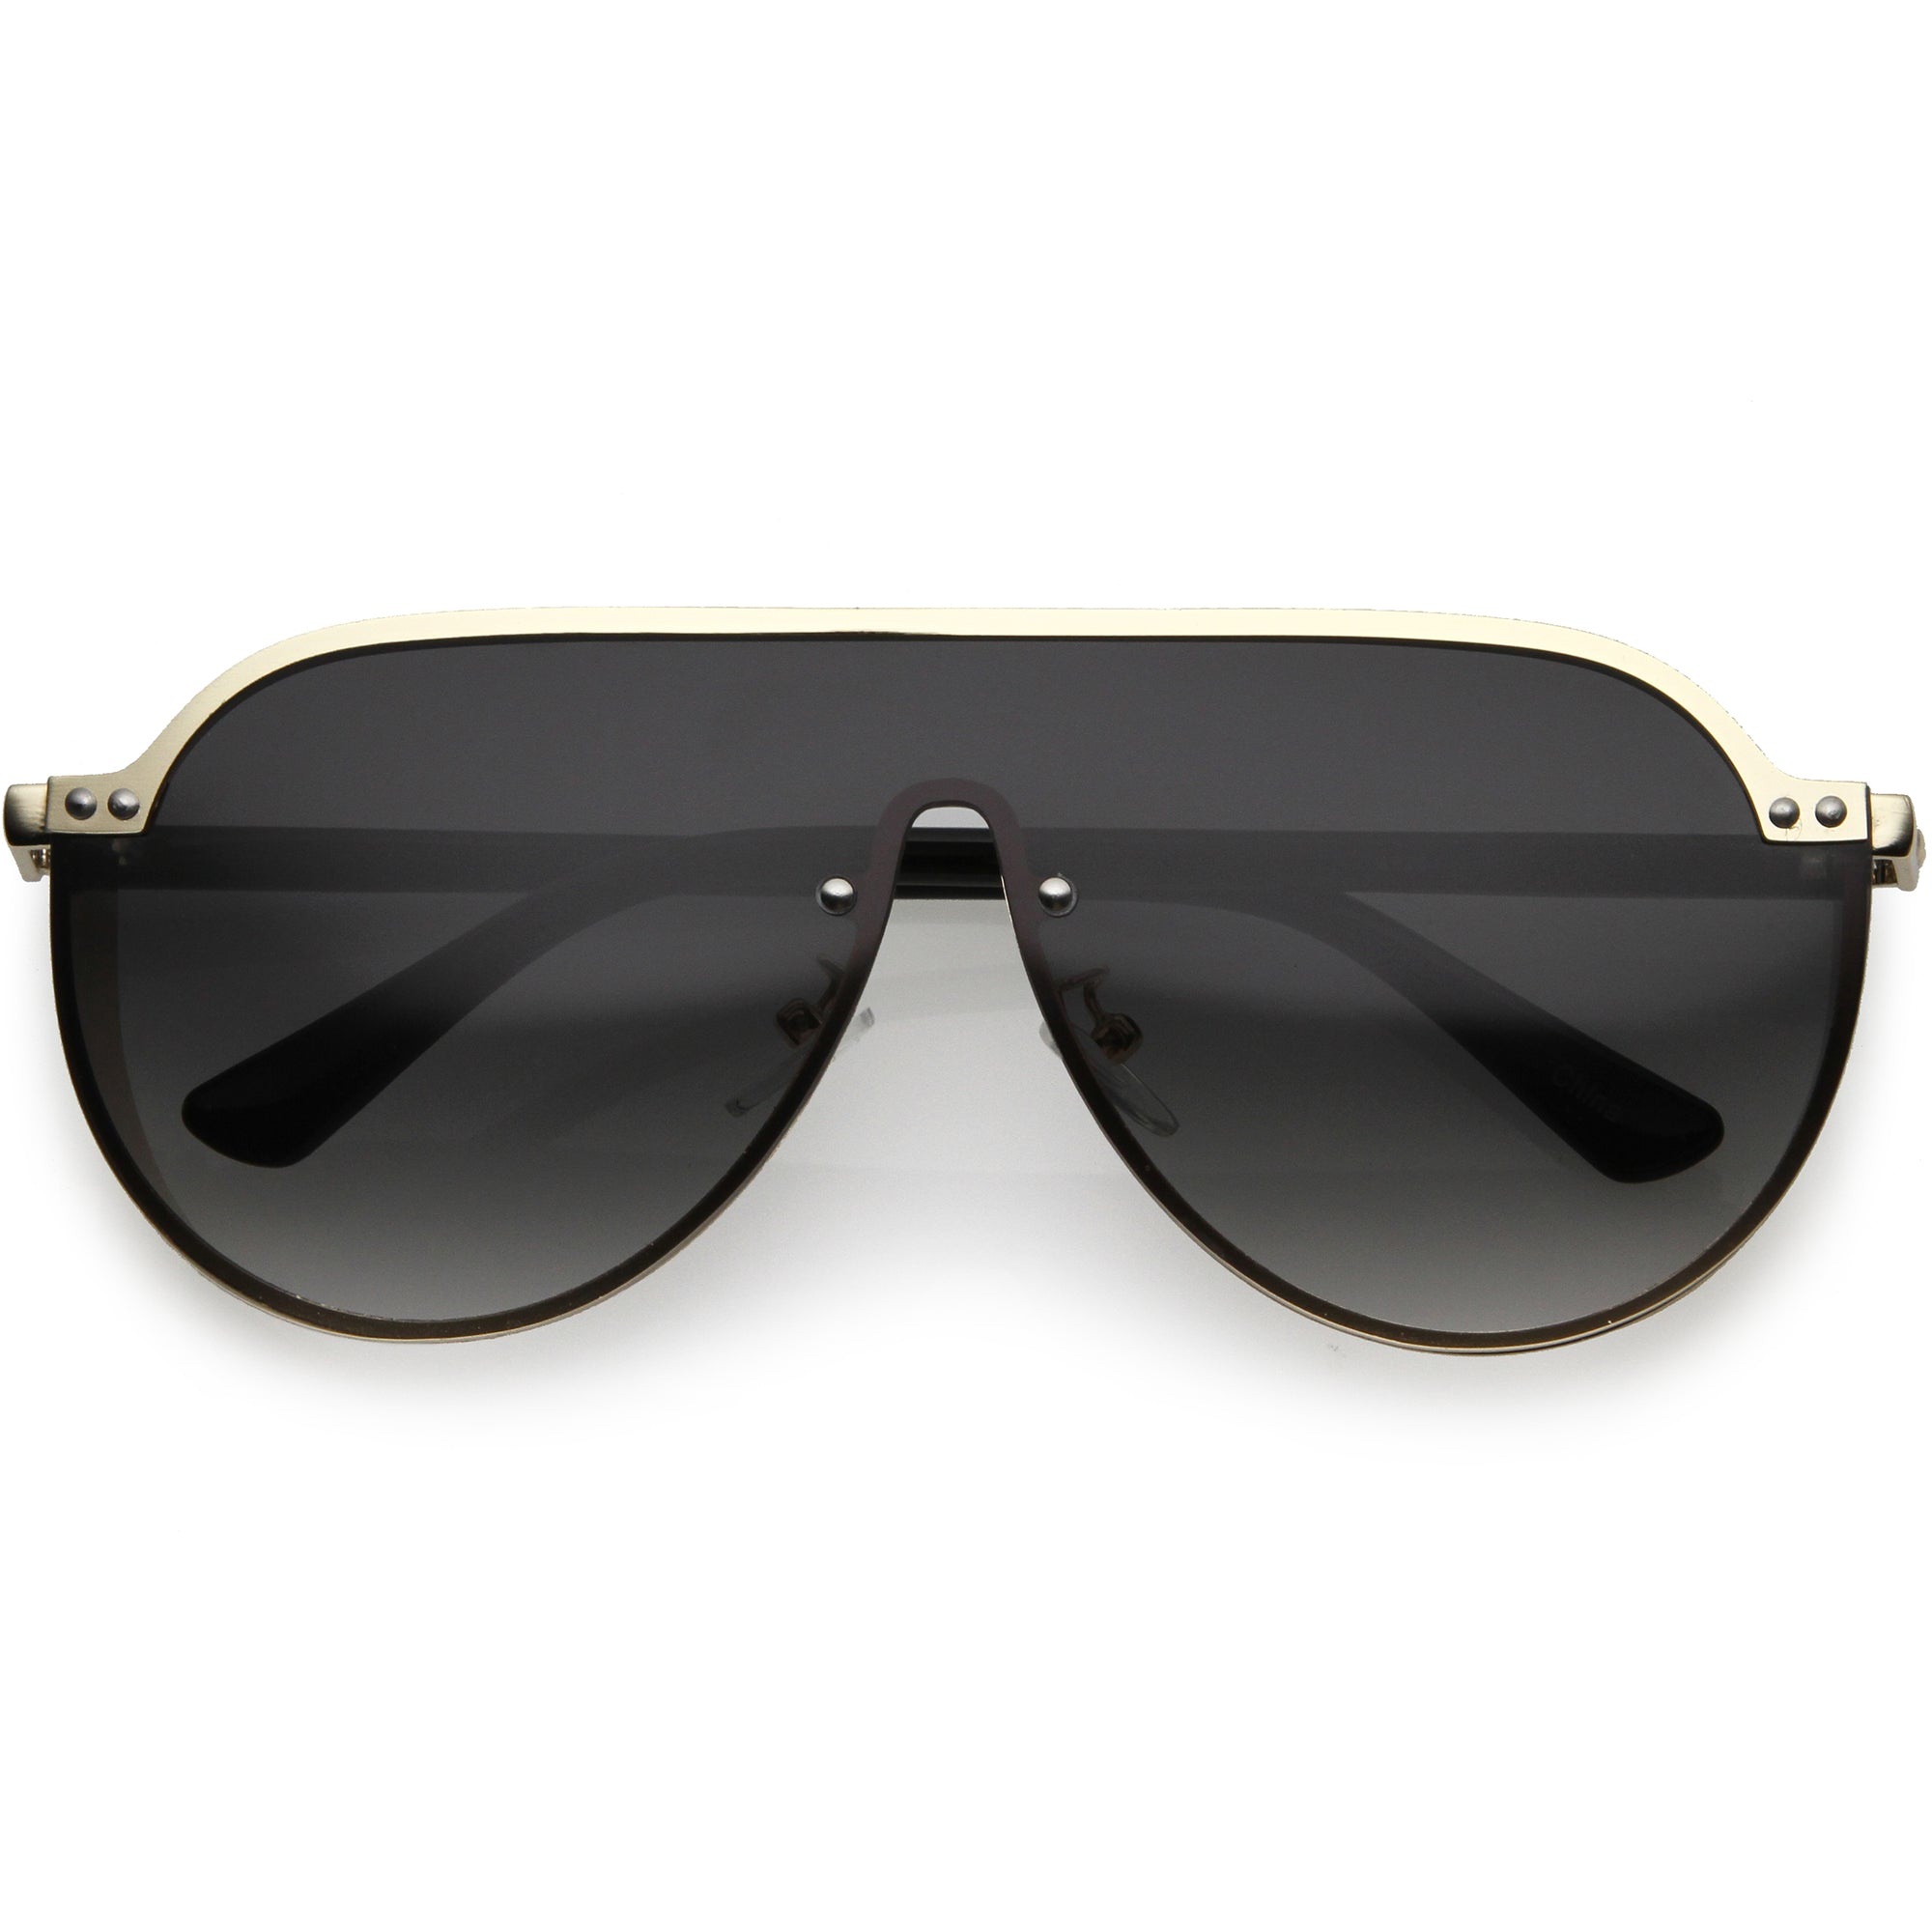 Designer Womens Pearl Round Fashion Sunglasses - zeroUV